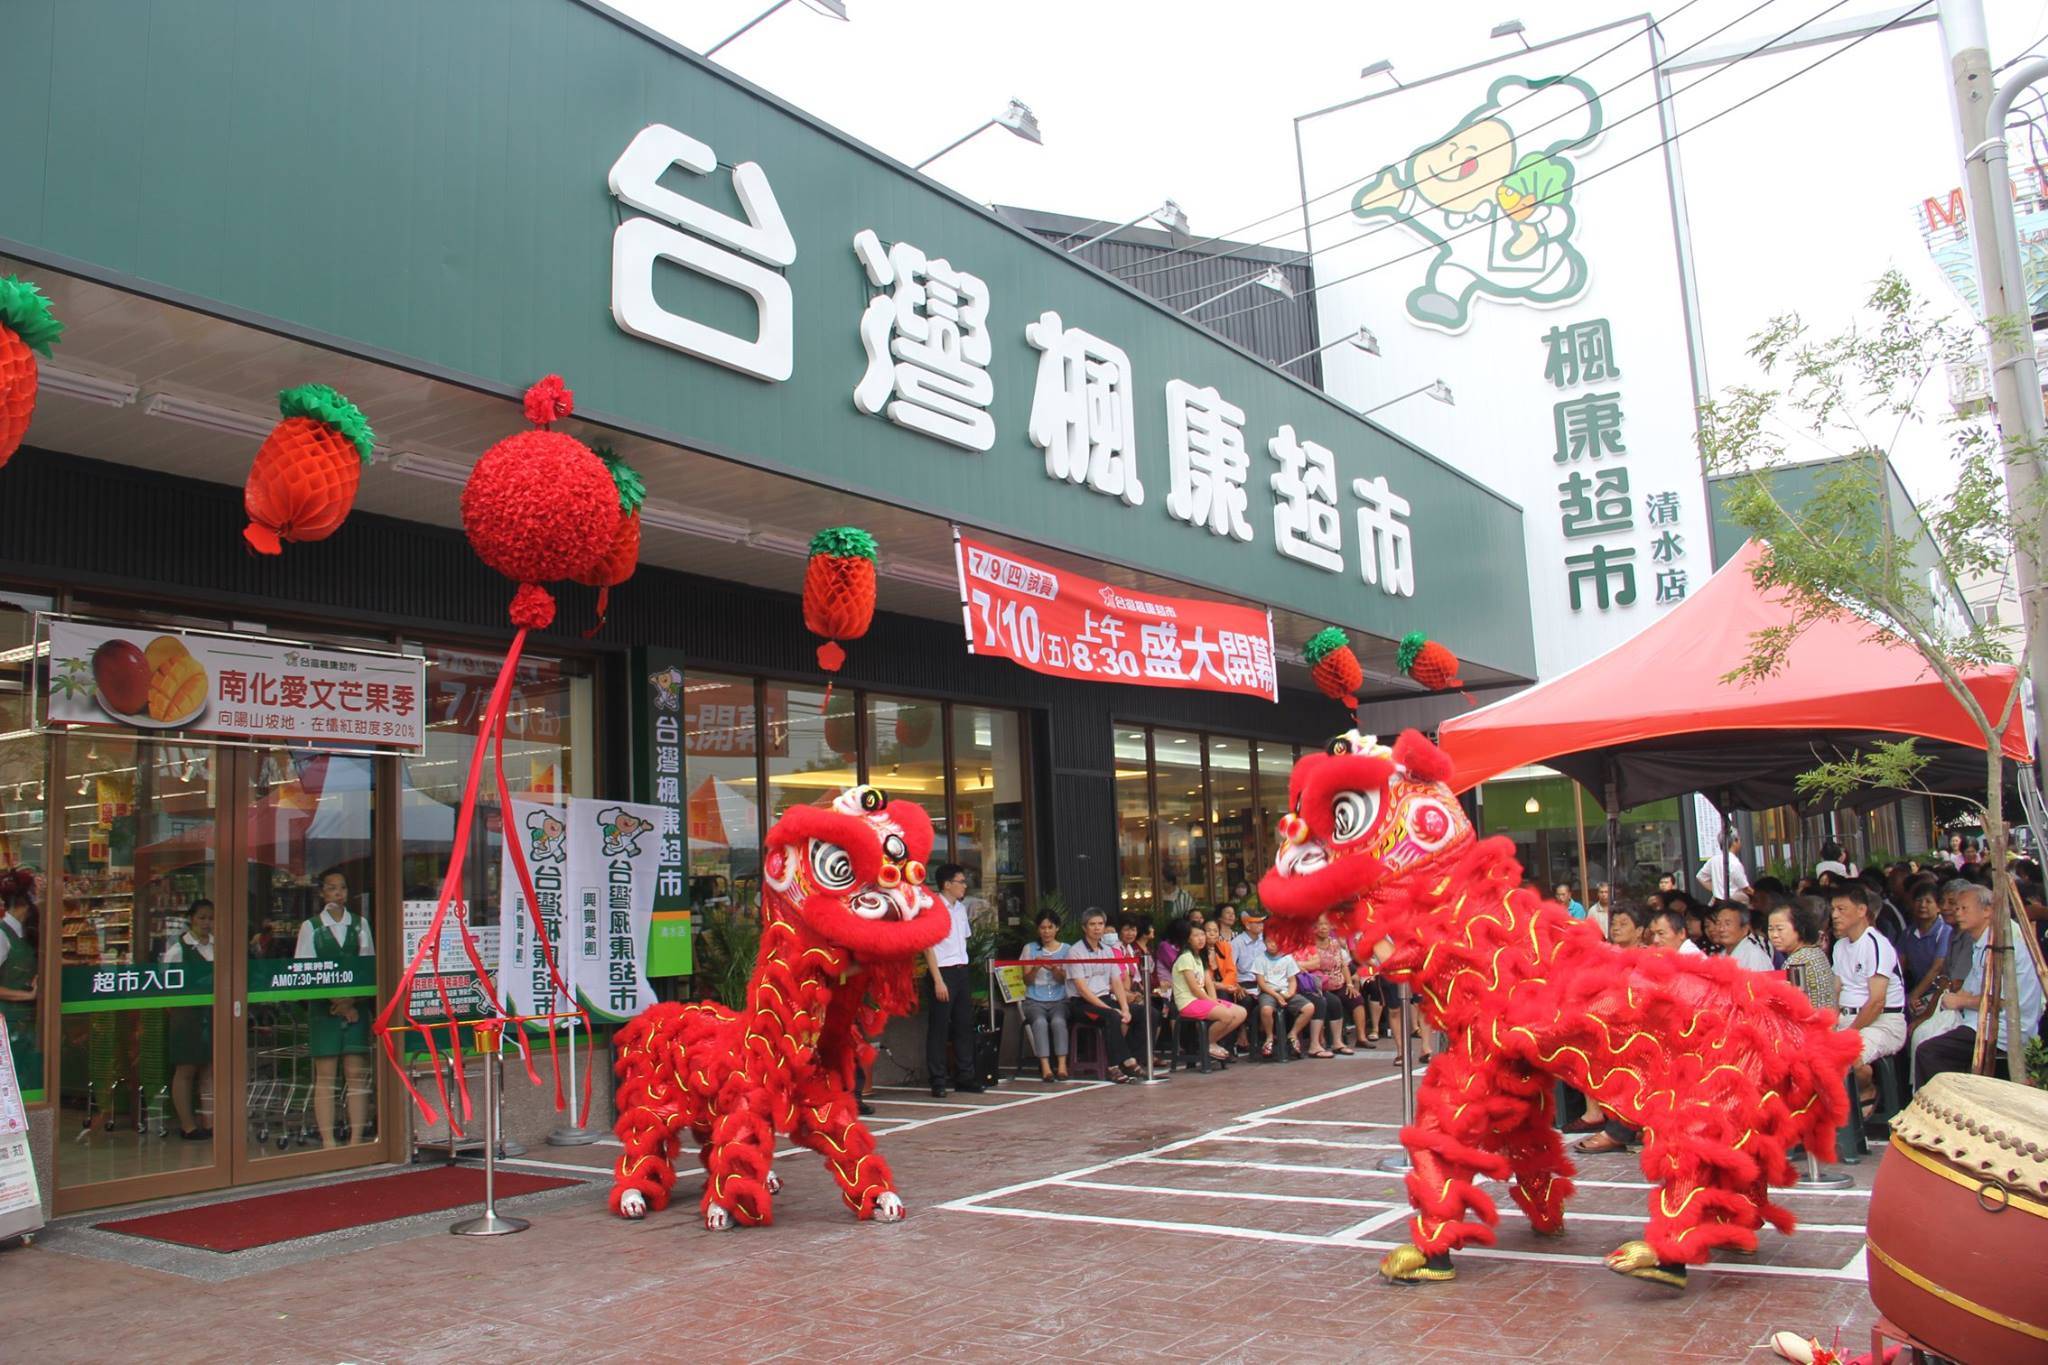 楓康超市為中部的地區超市，在新竹也設有分店